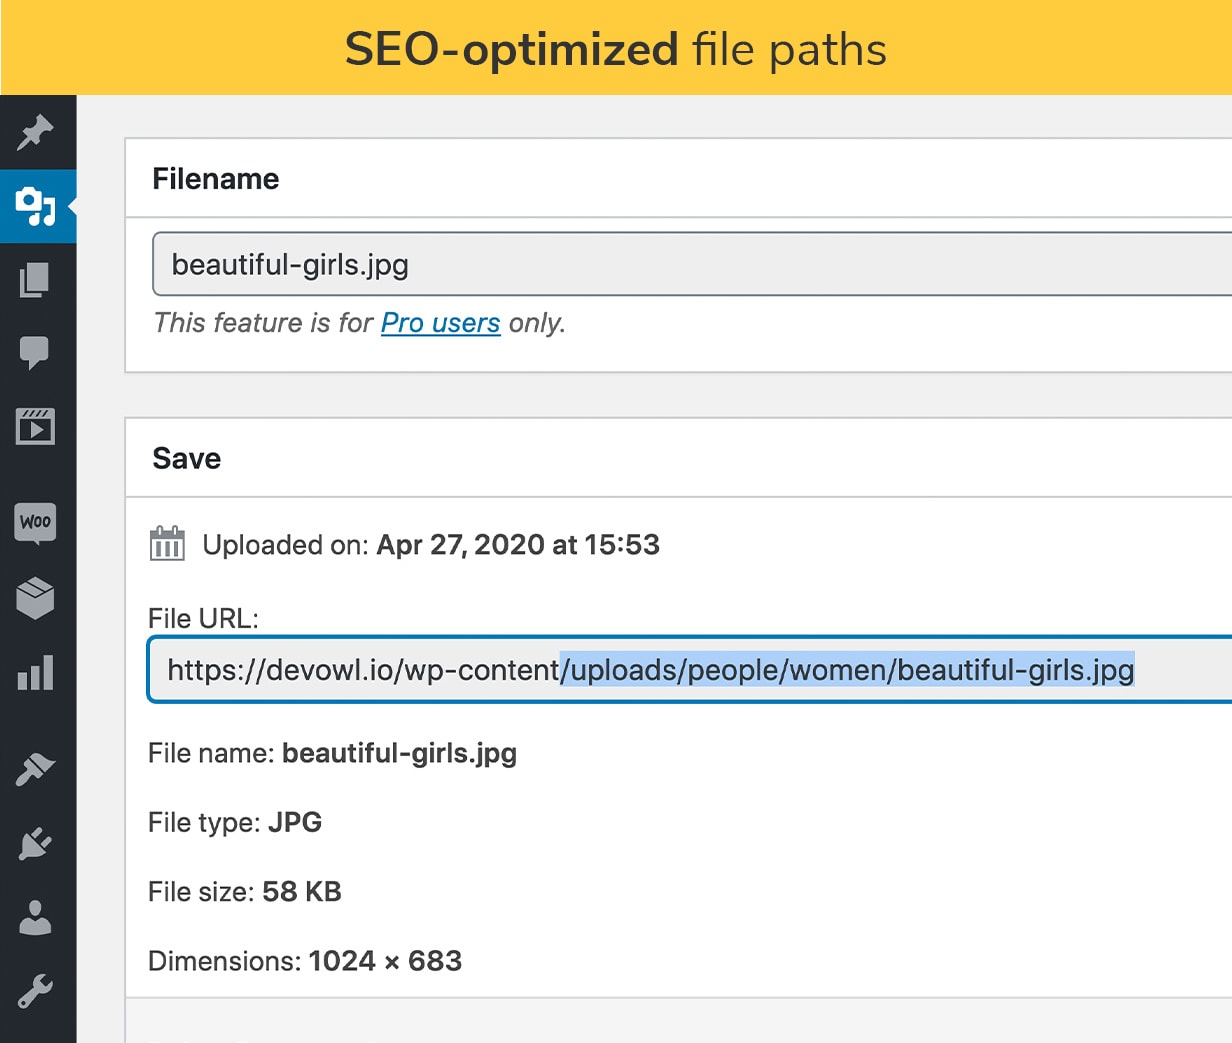 SEO-optimized file paths